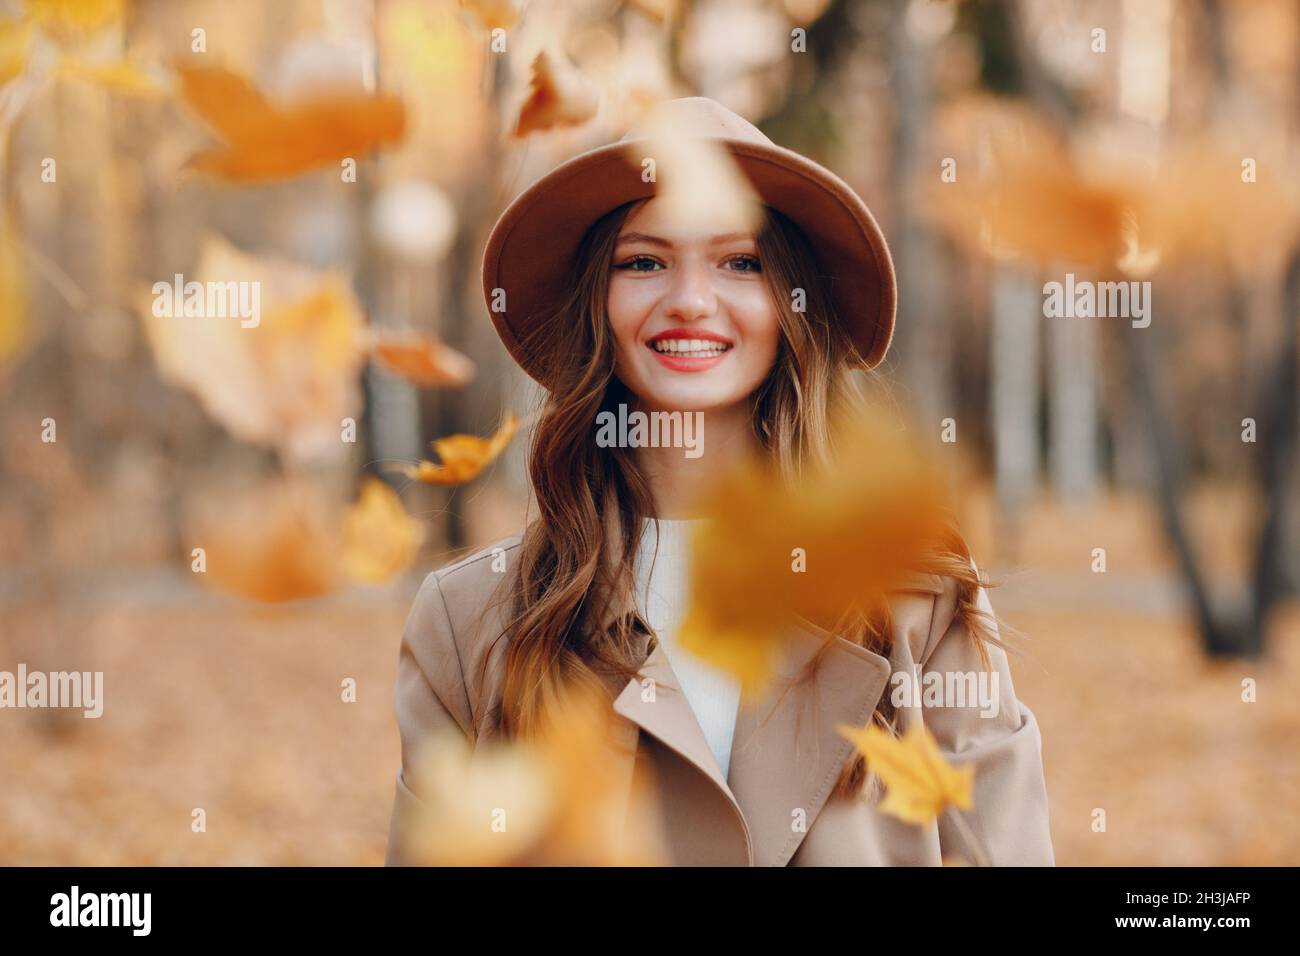 Junge Frau Modell im Herbst Park mit gelben Laub Ahornblätter. Das Blatt fällt herunter Stockfoto